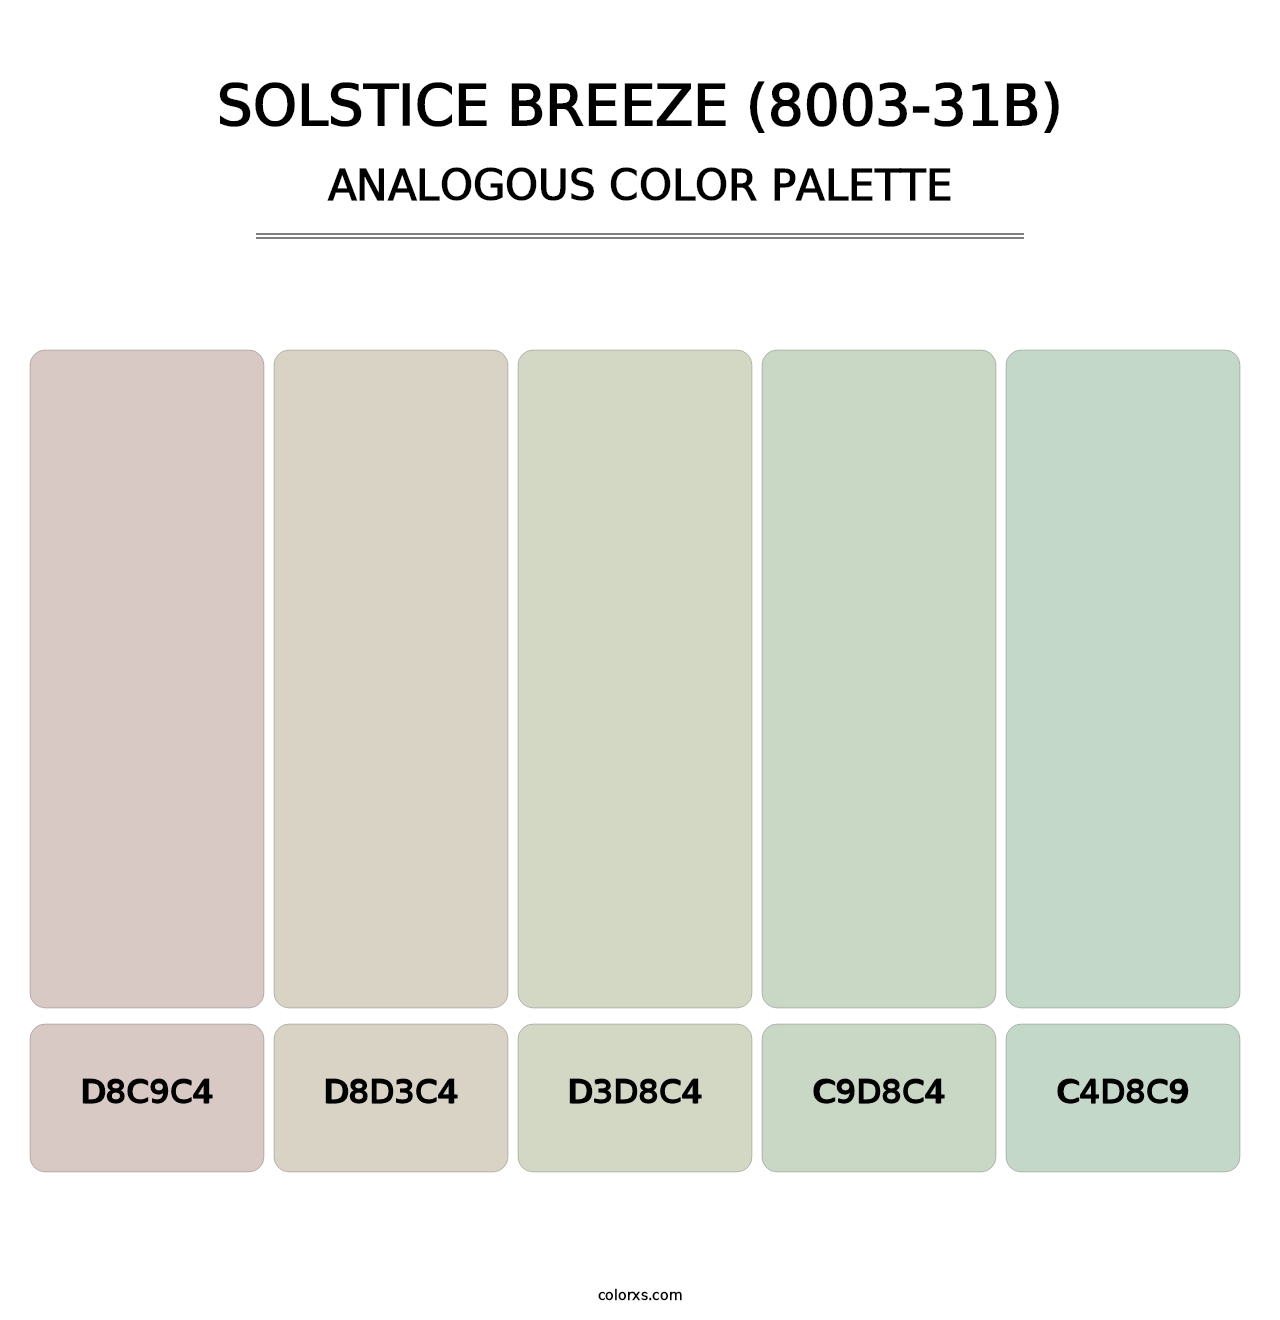 Solstice Breeze (8003-31B) - Analogous Color Palette